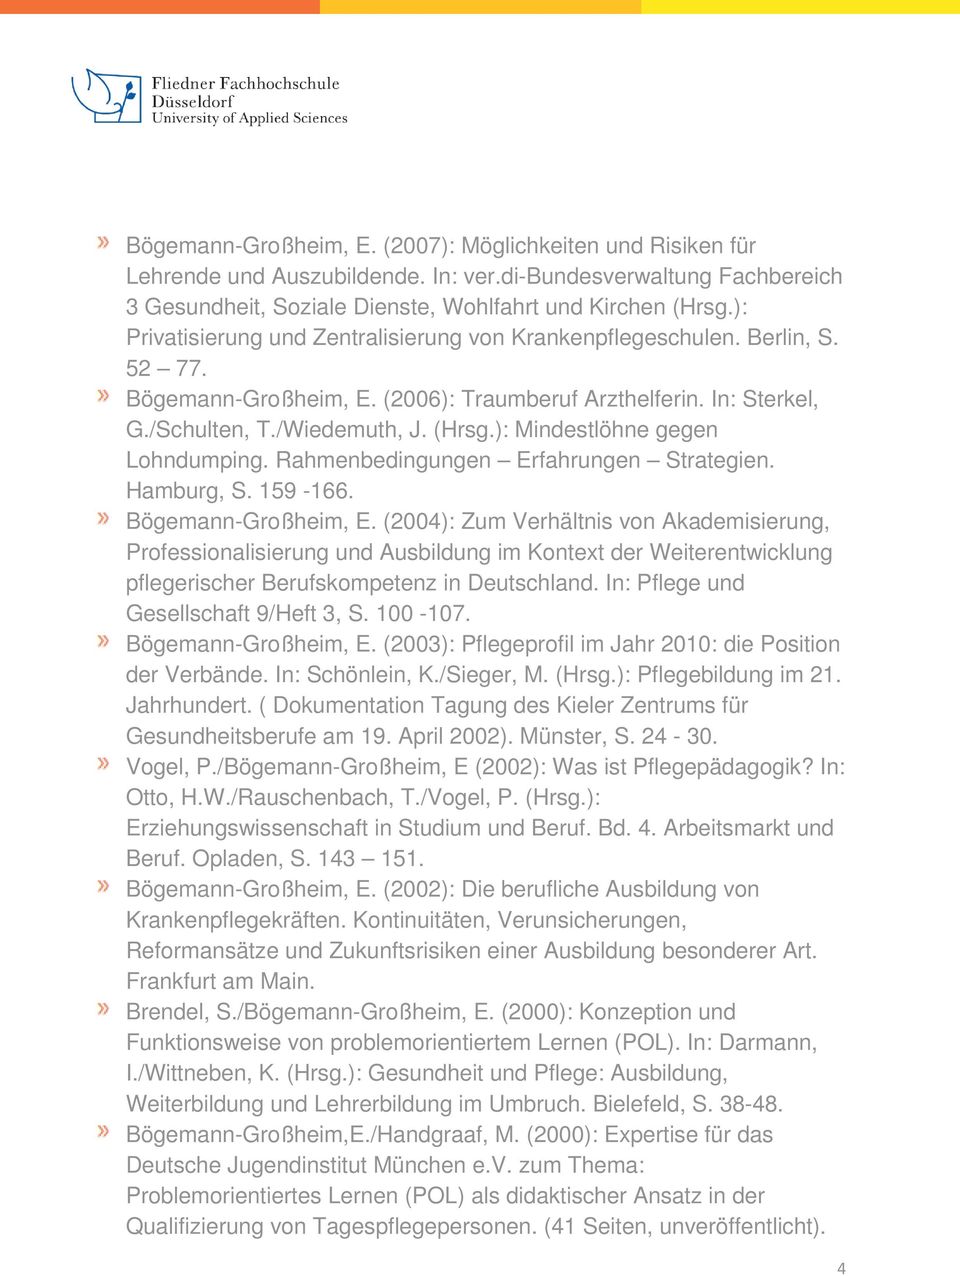 ): Mindestlöhne gegen Lohndumping. Rahmenbedingungen Erfahrungen Strategien. Hamburg, S. 159-166. Bögemann-Großheim, E.